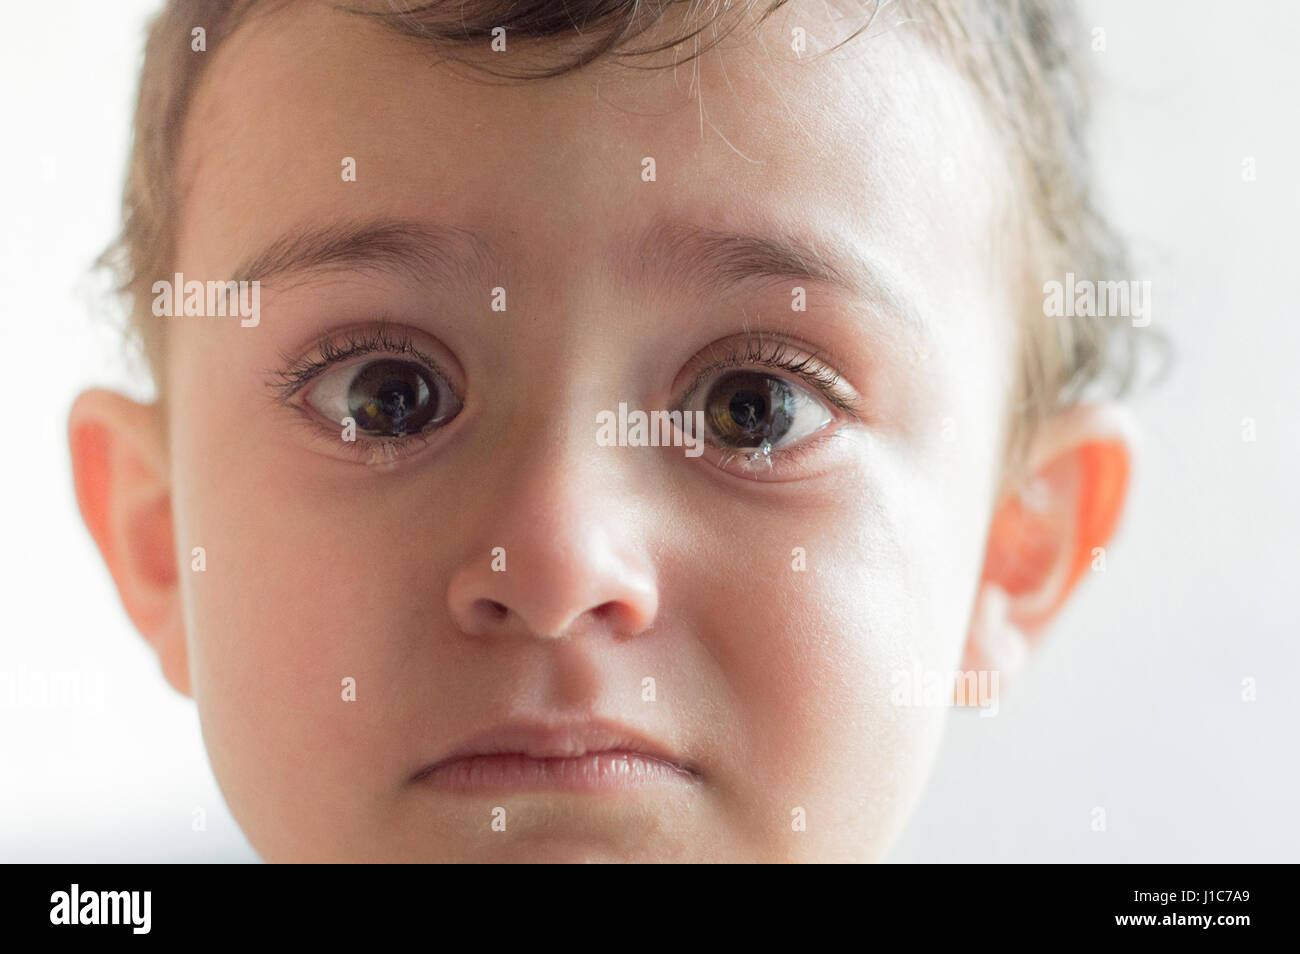 Face of Hispanic boy crying Stock Photo